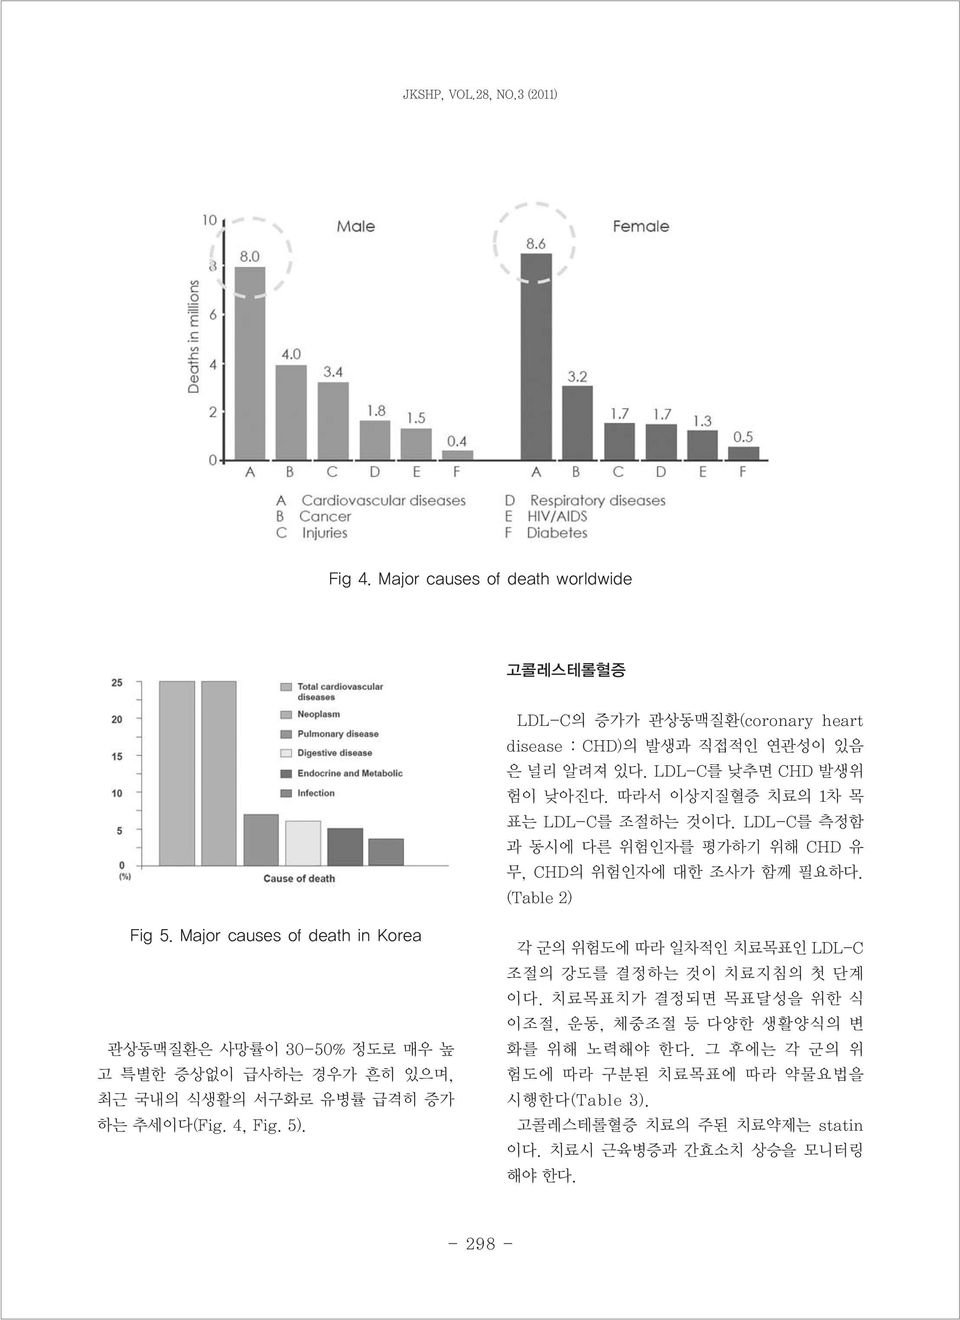 Major causes of death in Korea 관상동맥질환은 사망률이 30-50% 정도로 매우 높 고 특별한 증상없이 급사하는 경우가 흔히 있으며, 최근 국내의 식생활의 서구화로 유병률 급격히 증가 하는 추세이다(Fig. 4, Fig. 5).